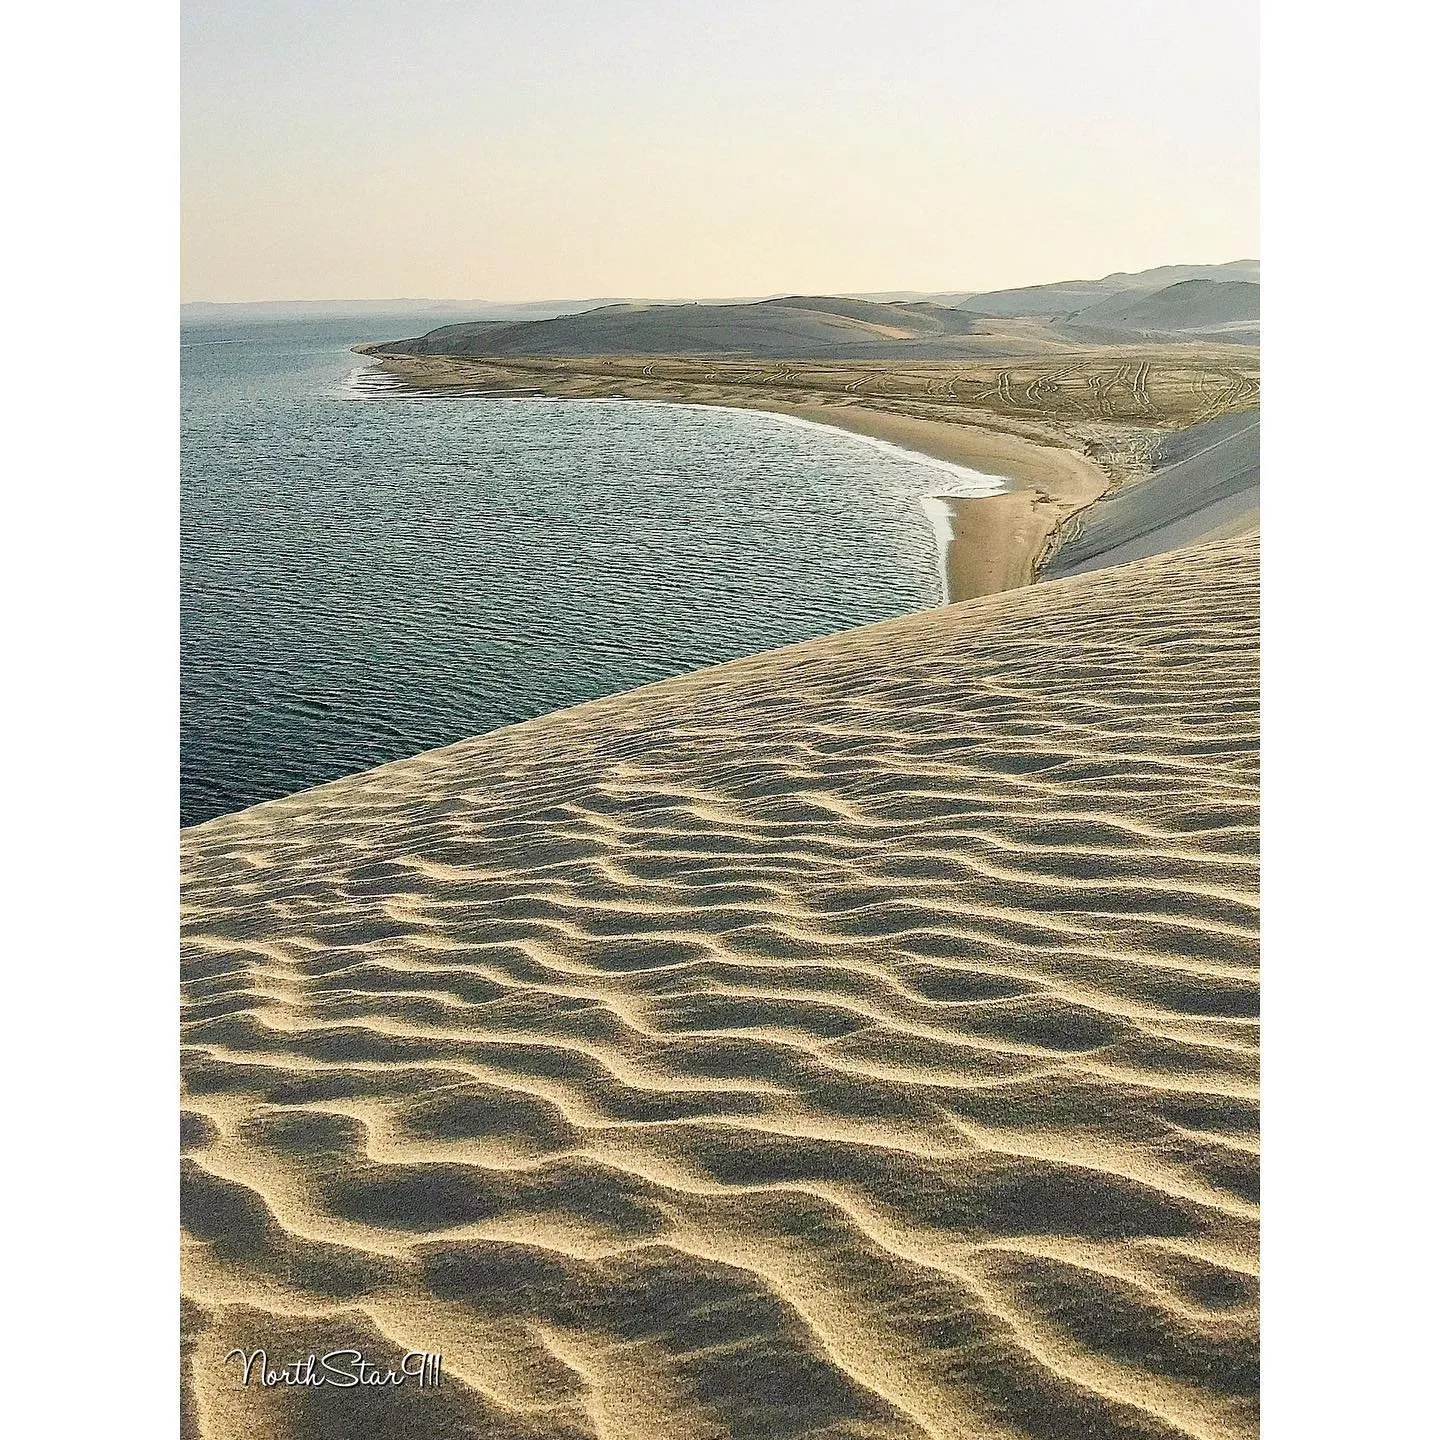 6 شواطئ في قطر اقصديها للسباحة، مشاهدة غروب الشمس أو مجرّد المشي...